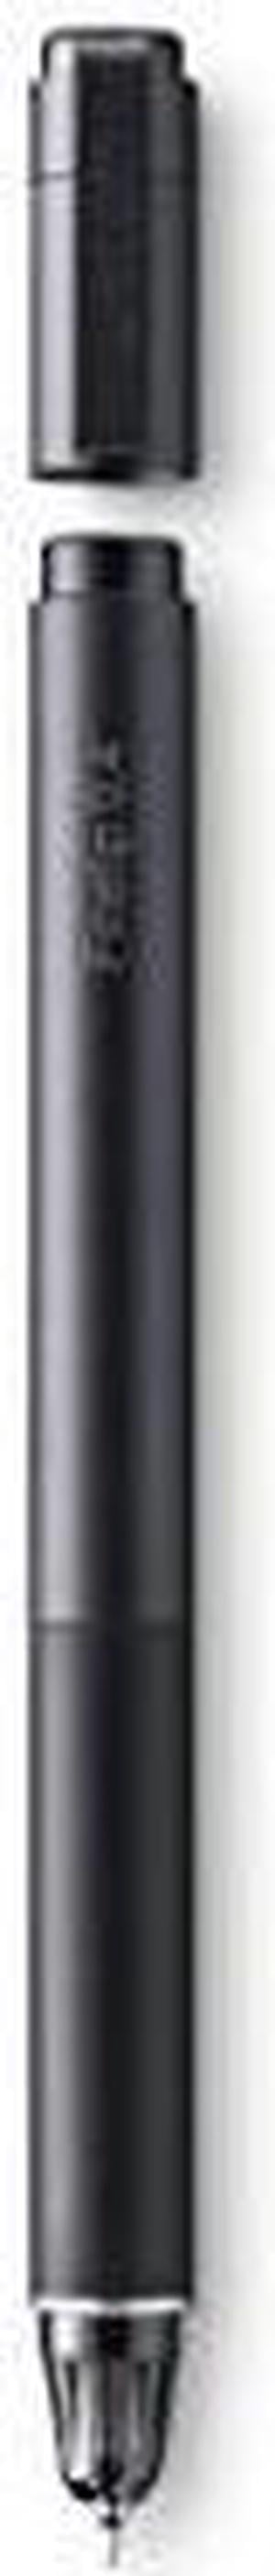 Wacom Finetip Pen for Wacom Intuos Pro